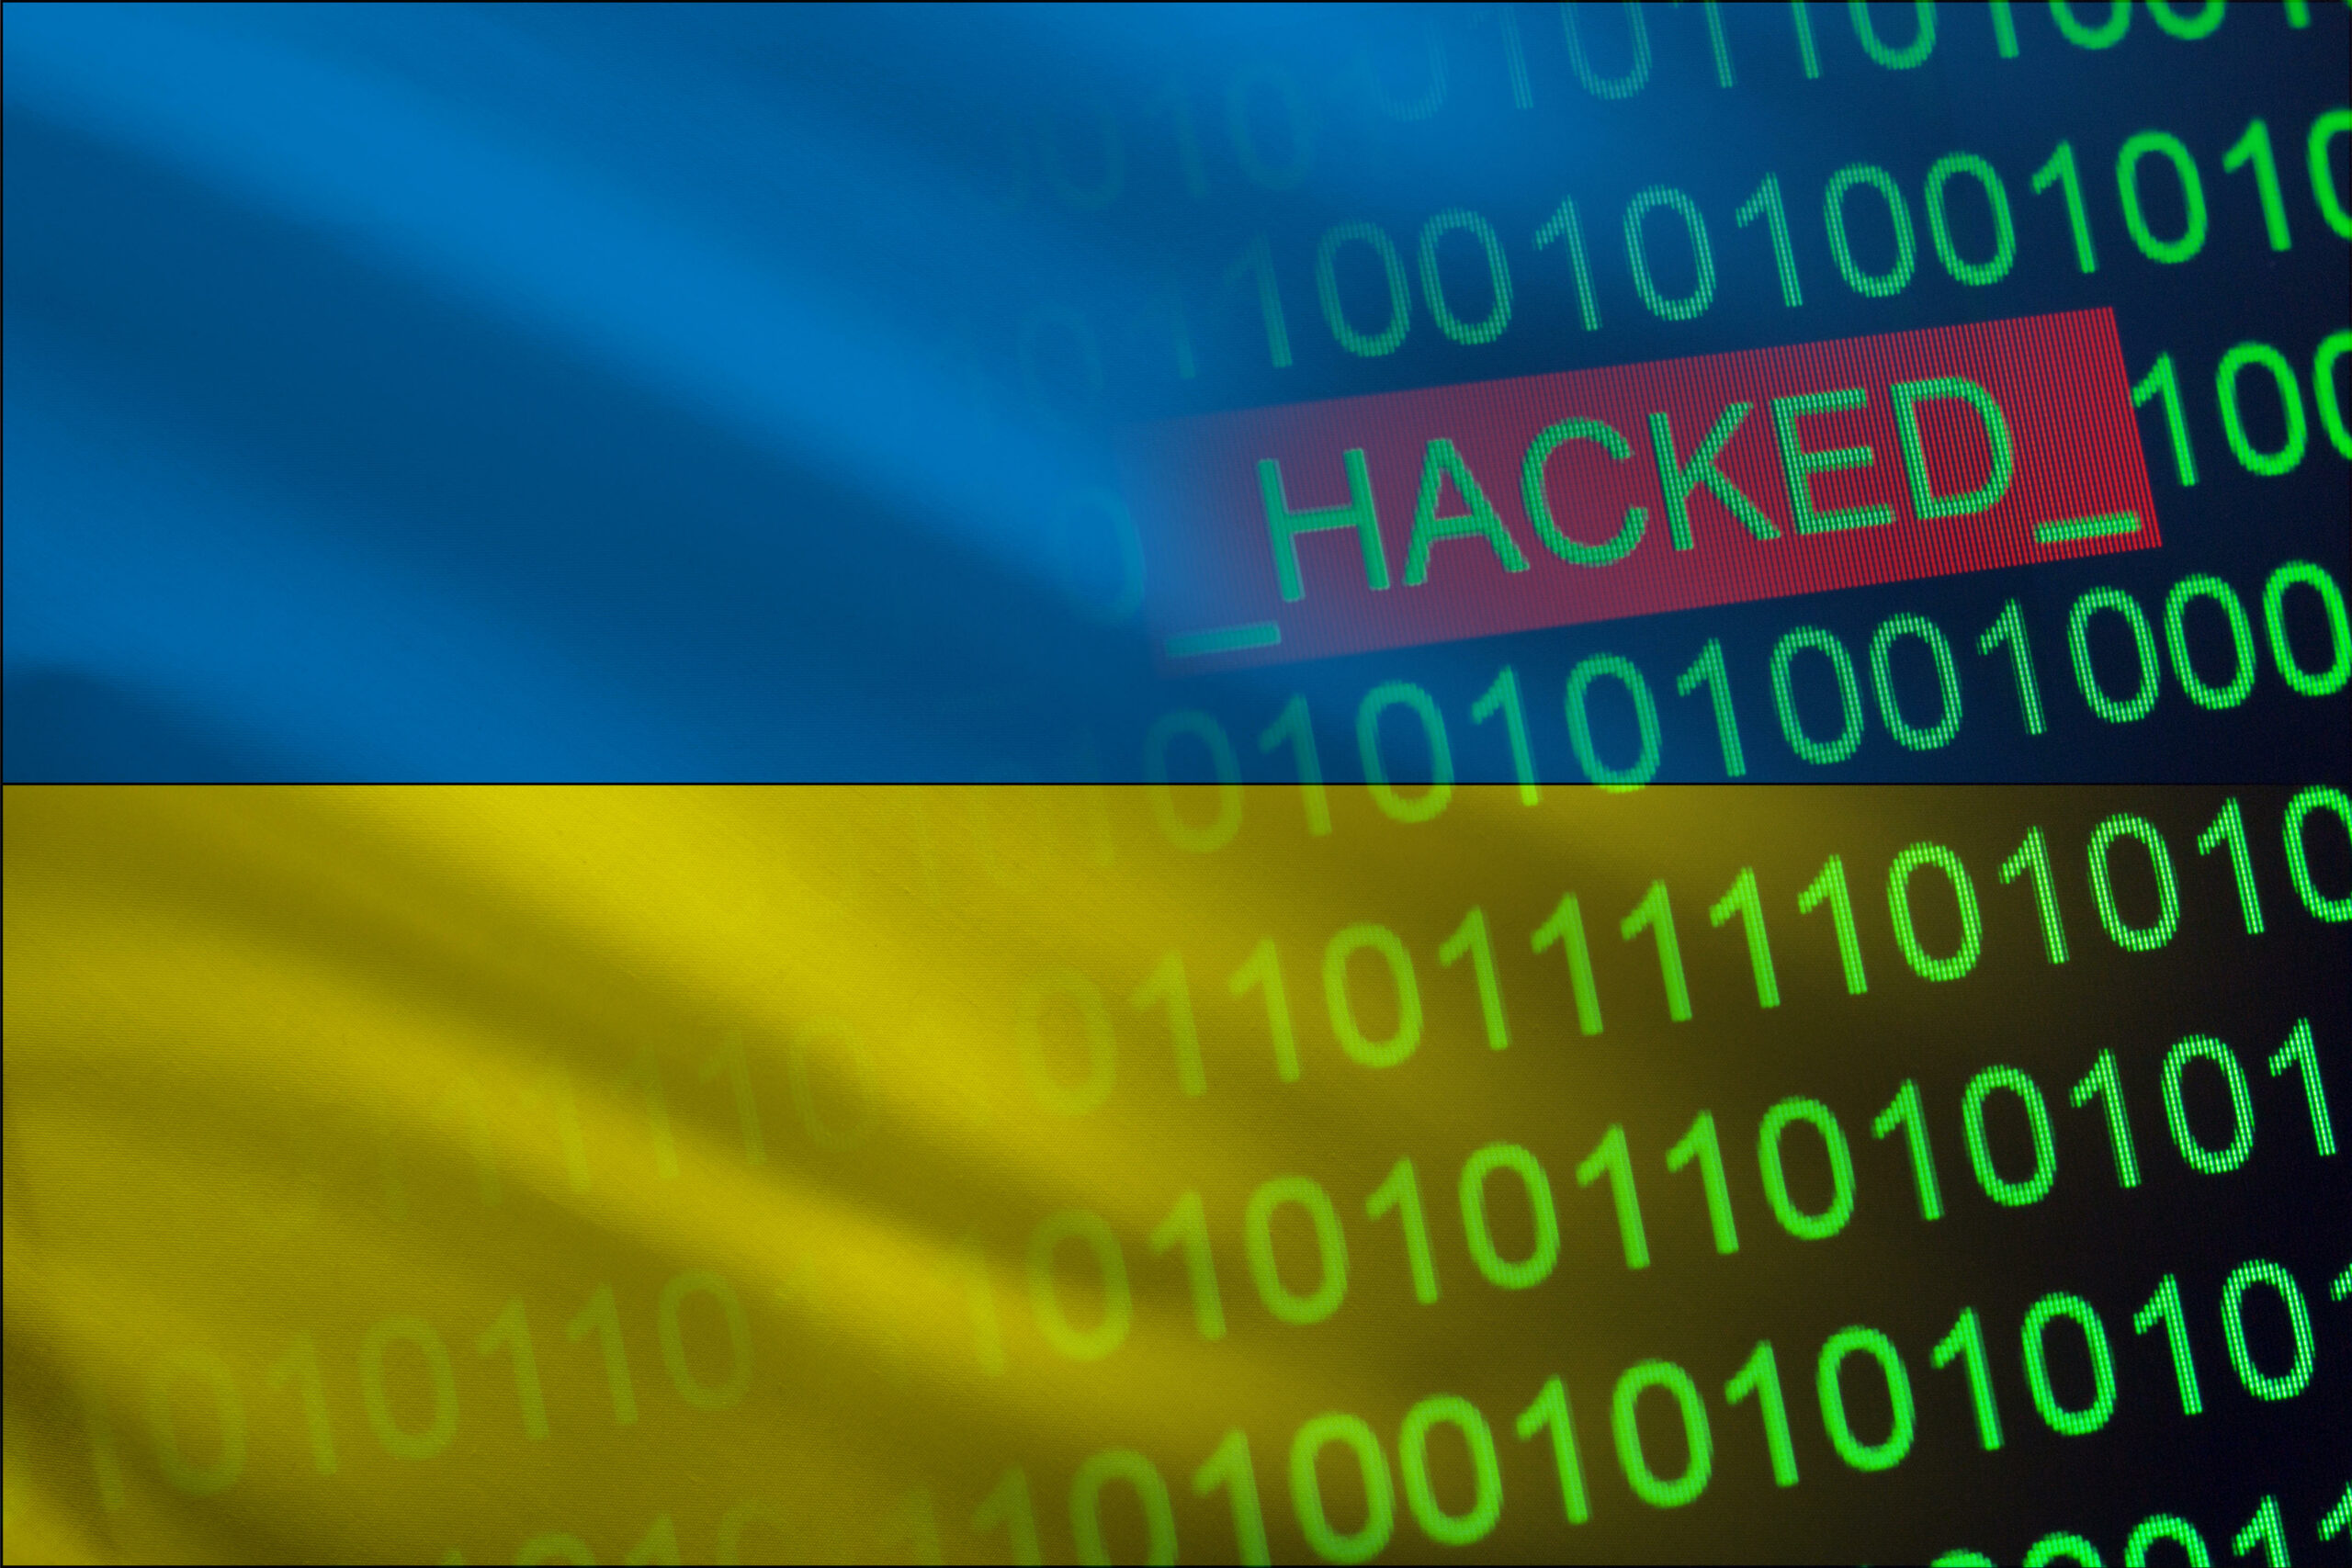 Serie af cyberangreb ramte ukrainske organisationer med kritisk infrastruktur